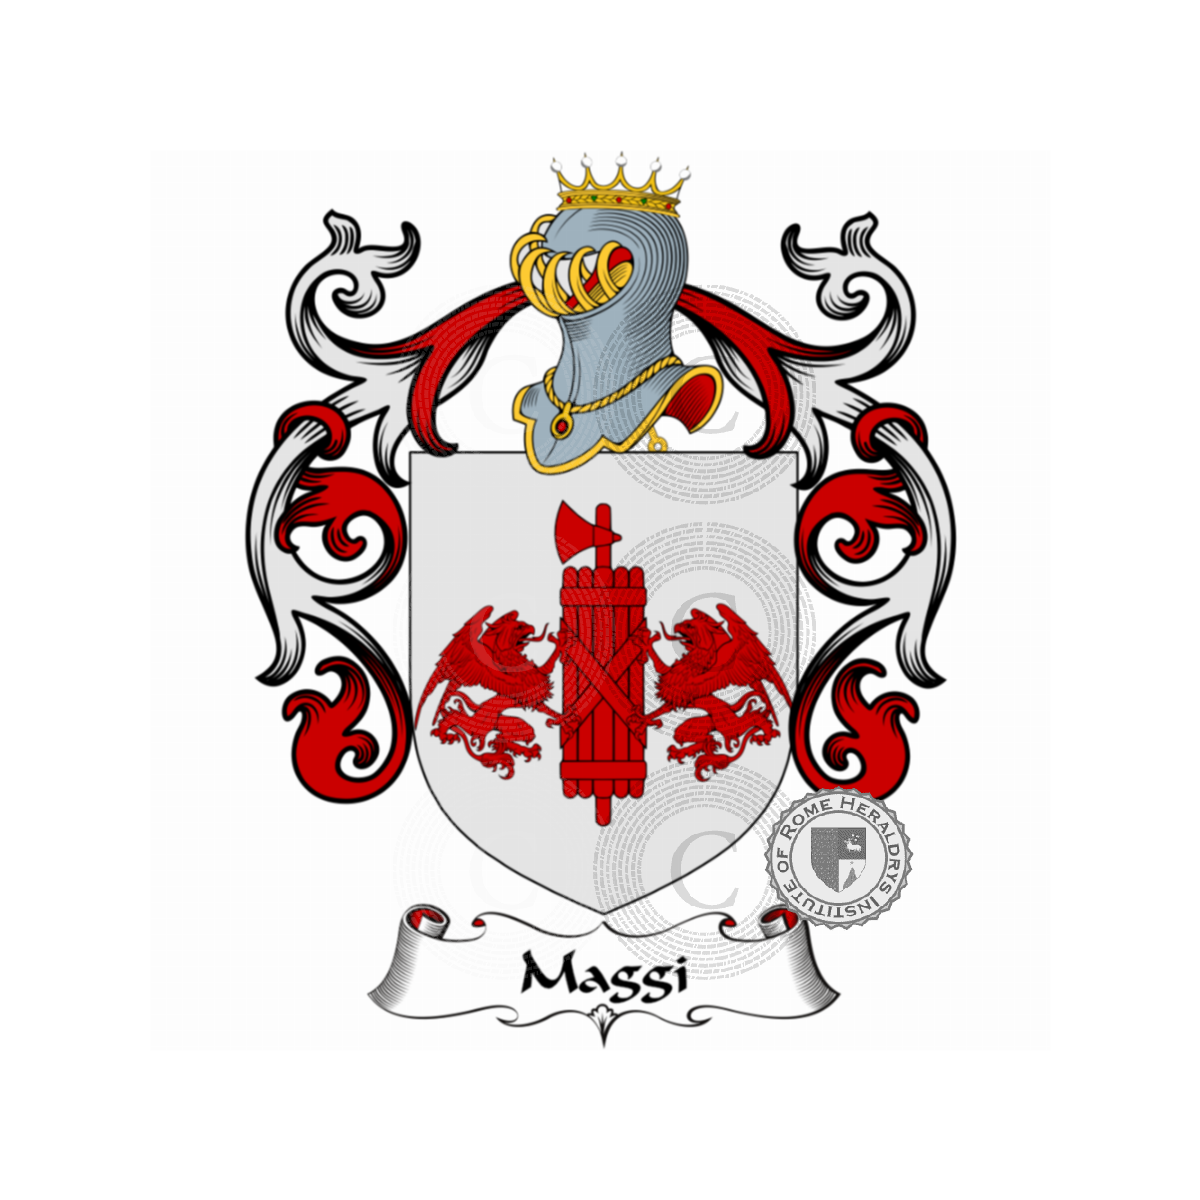 Escudo de la familiaMaggi, Maddi,Madius,Maggi-Via,Magi